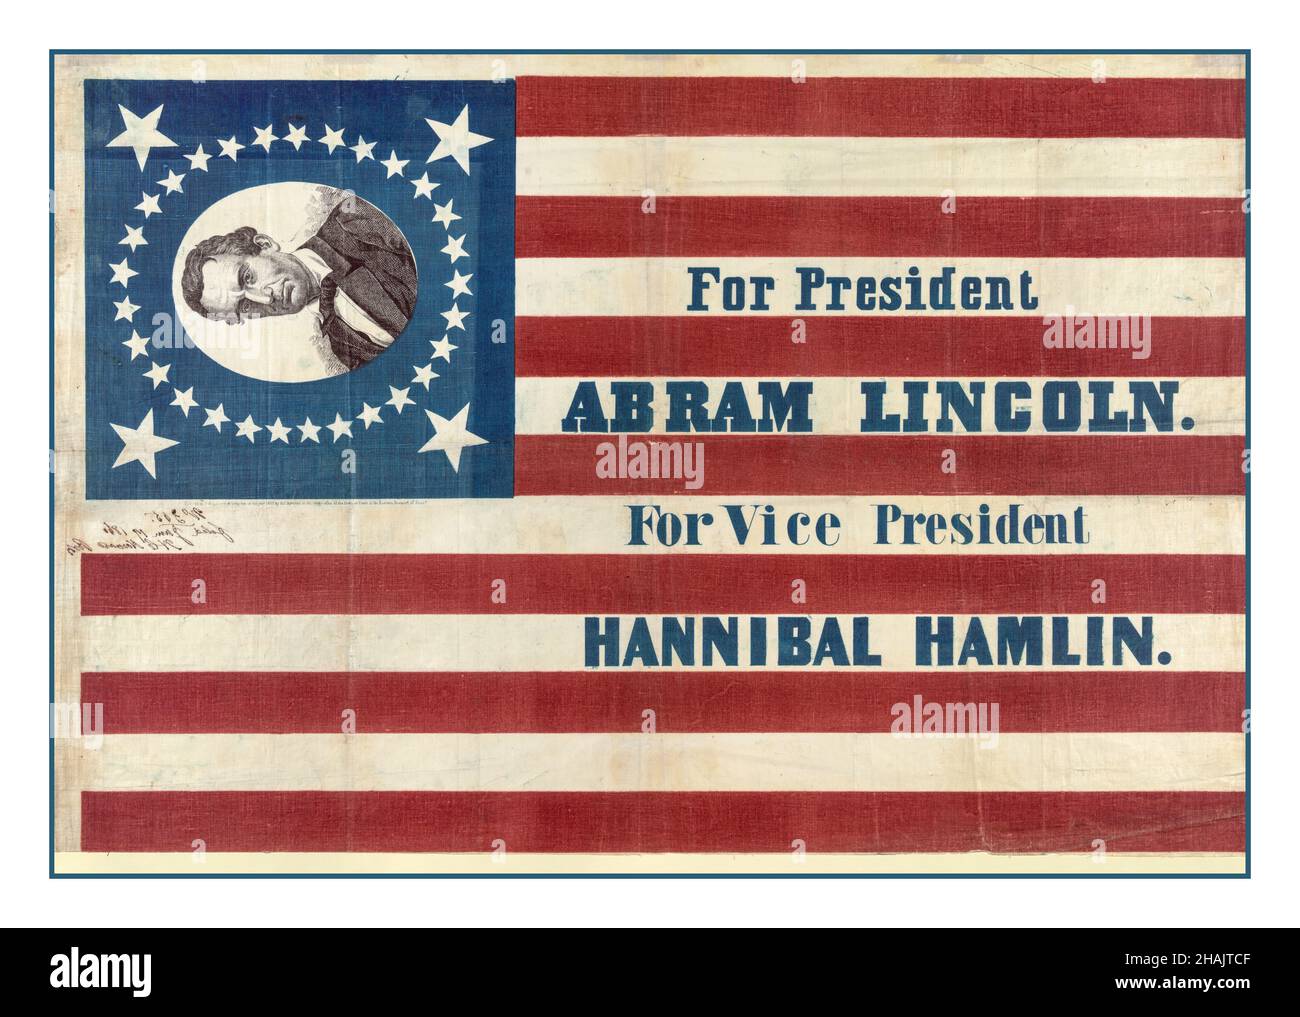 ABRAHAM LINCOLN 1860 États-Unis vote de circulaire d'affiche électorale pour le président (Abram) ABRAHAM Lincoln.Pour le vice-président, Hannibal Hamlin pour le président, Abra[ha]m Lincoln.Pour le vice-président, Hannibal Hamlin.Illustration Grande bannière de campagne pour le candidat républicain à la présidence Abraham Lincoln et le colistier Hannibal Hamlin.Le prénom de Lincoln est ici « Abram ».La bannière se compose de trente-trois étoiles drapeau américain imprimé sur tissu.Dans un coin, un portrait de Lincoln, sans barbe, entouré d'étoiles, apparaît sur un champ bleu.Howard, H. C. artiste Banque D'Images